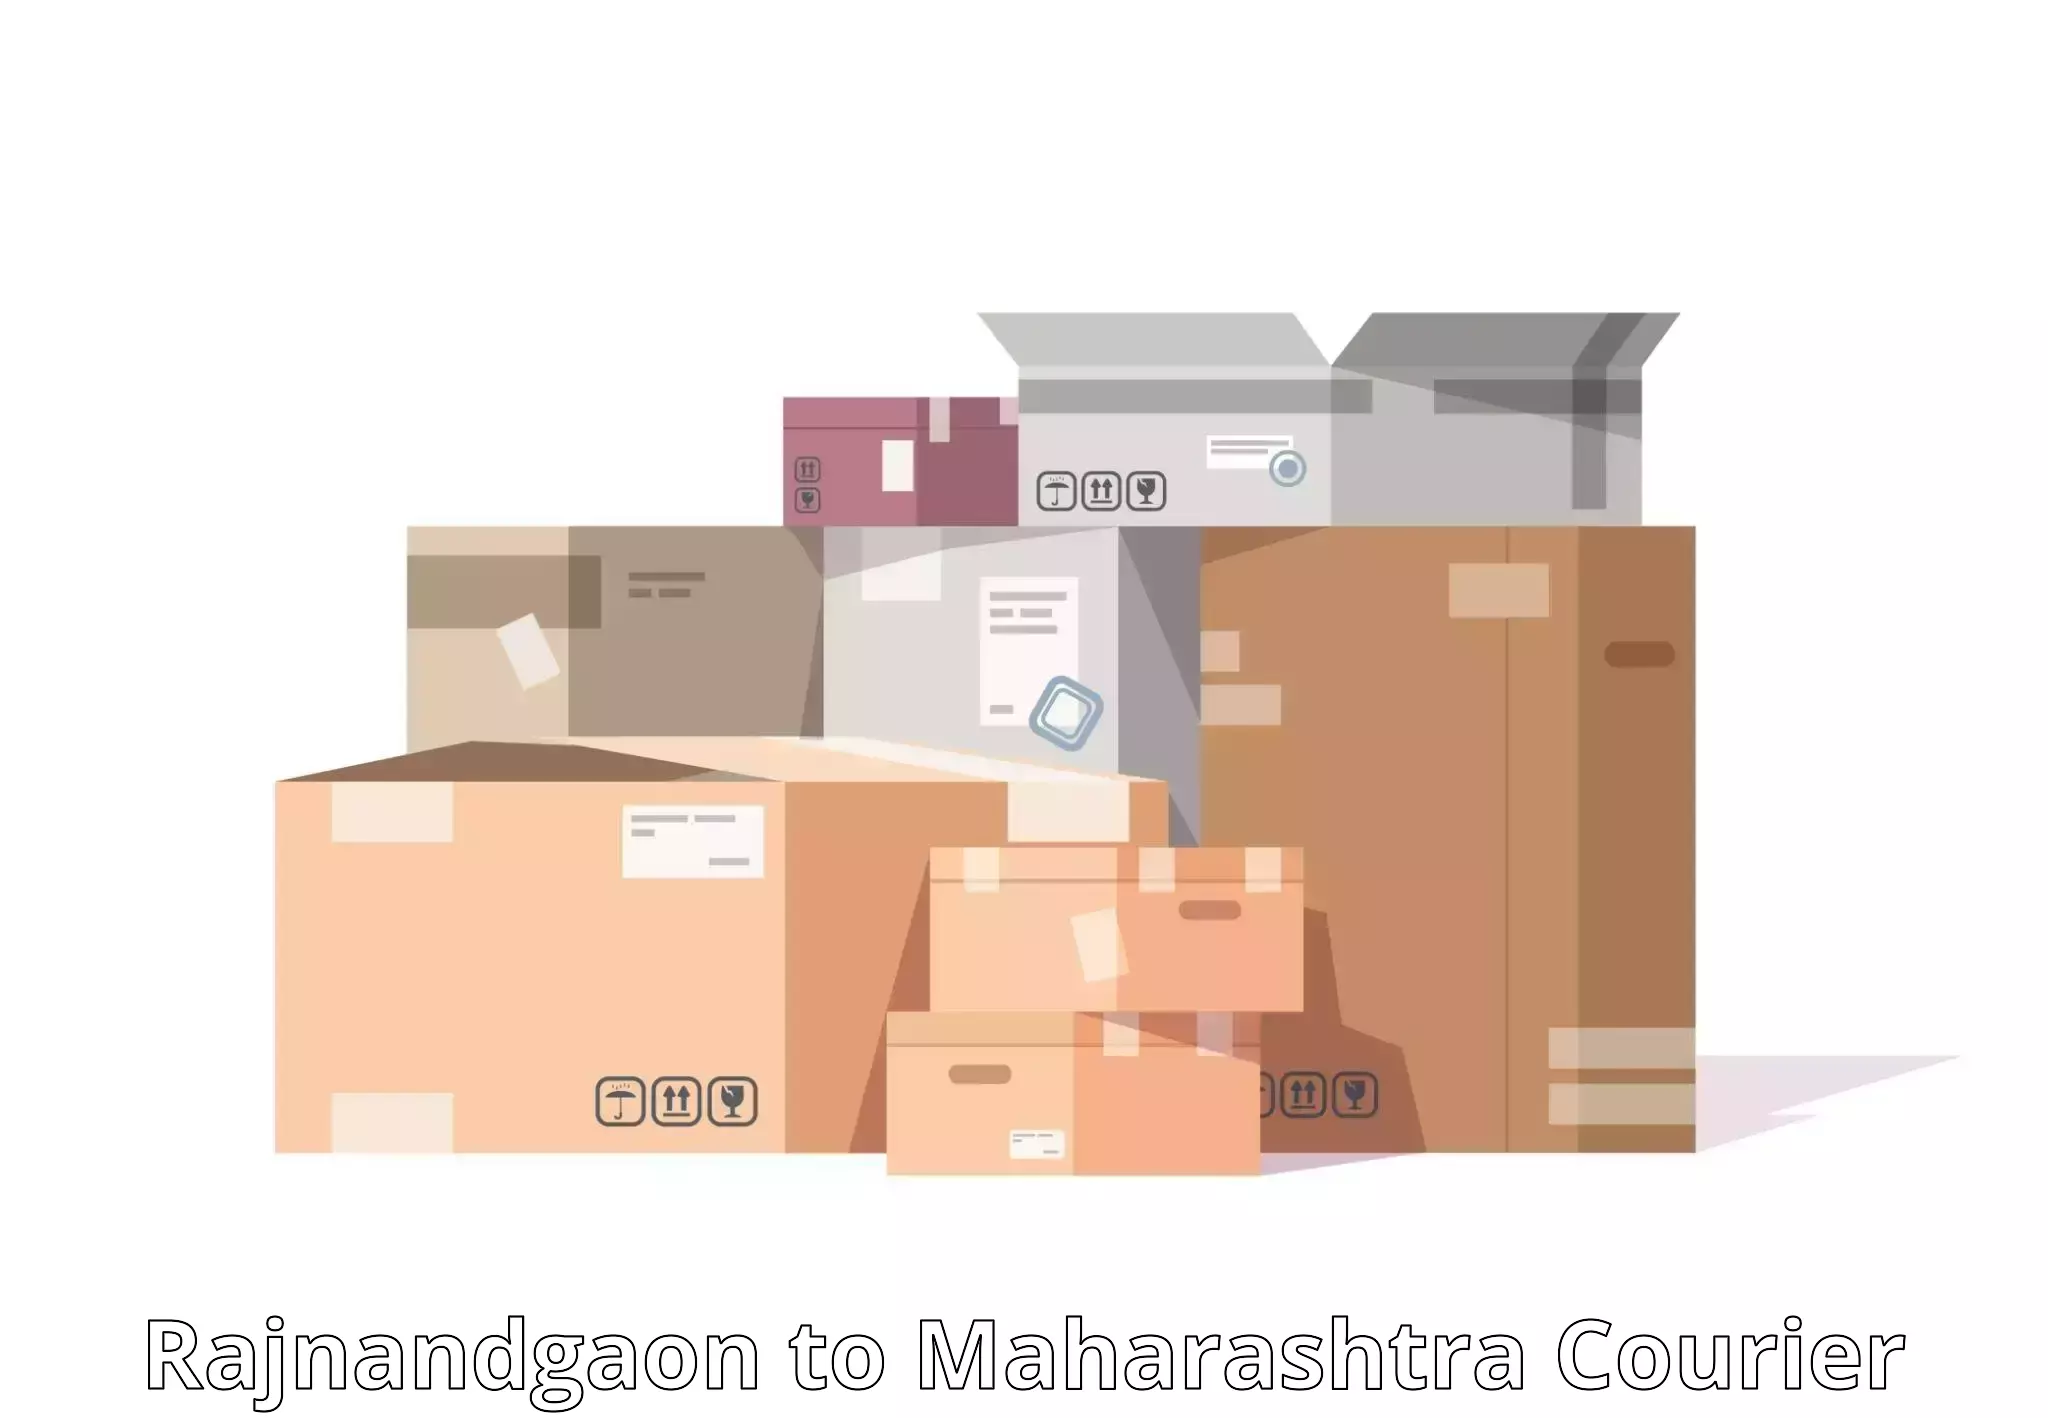 Courier service partnerships Rajnandgaon to Gangakher